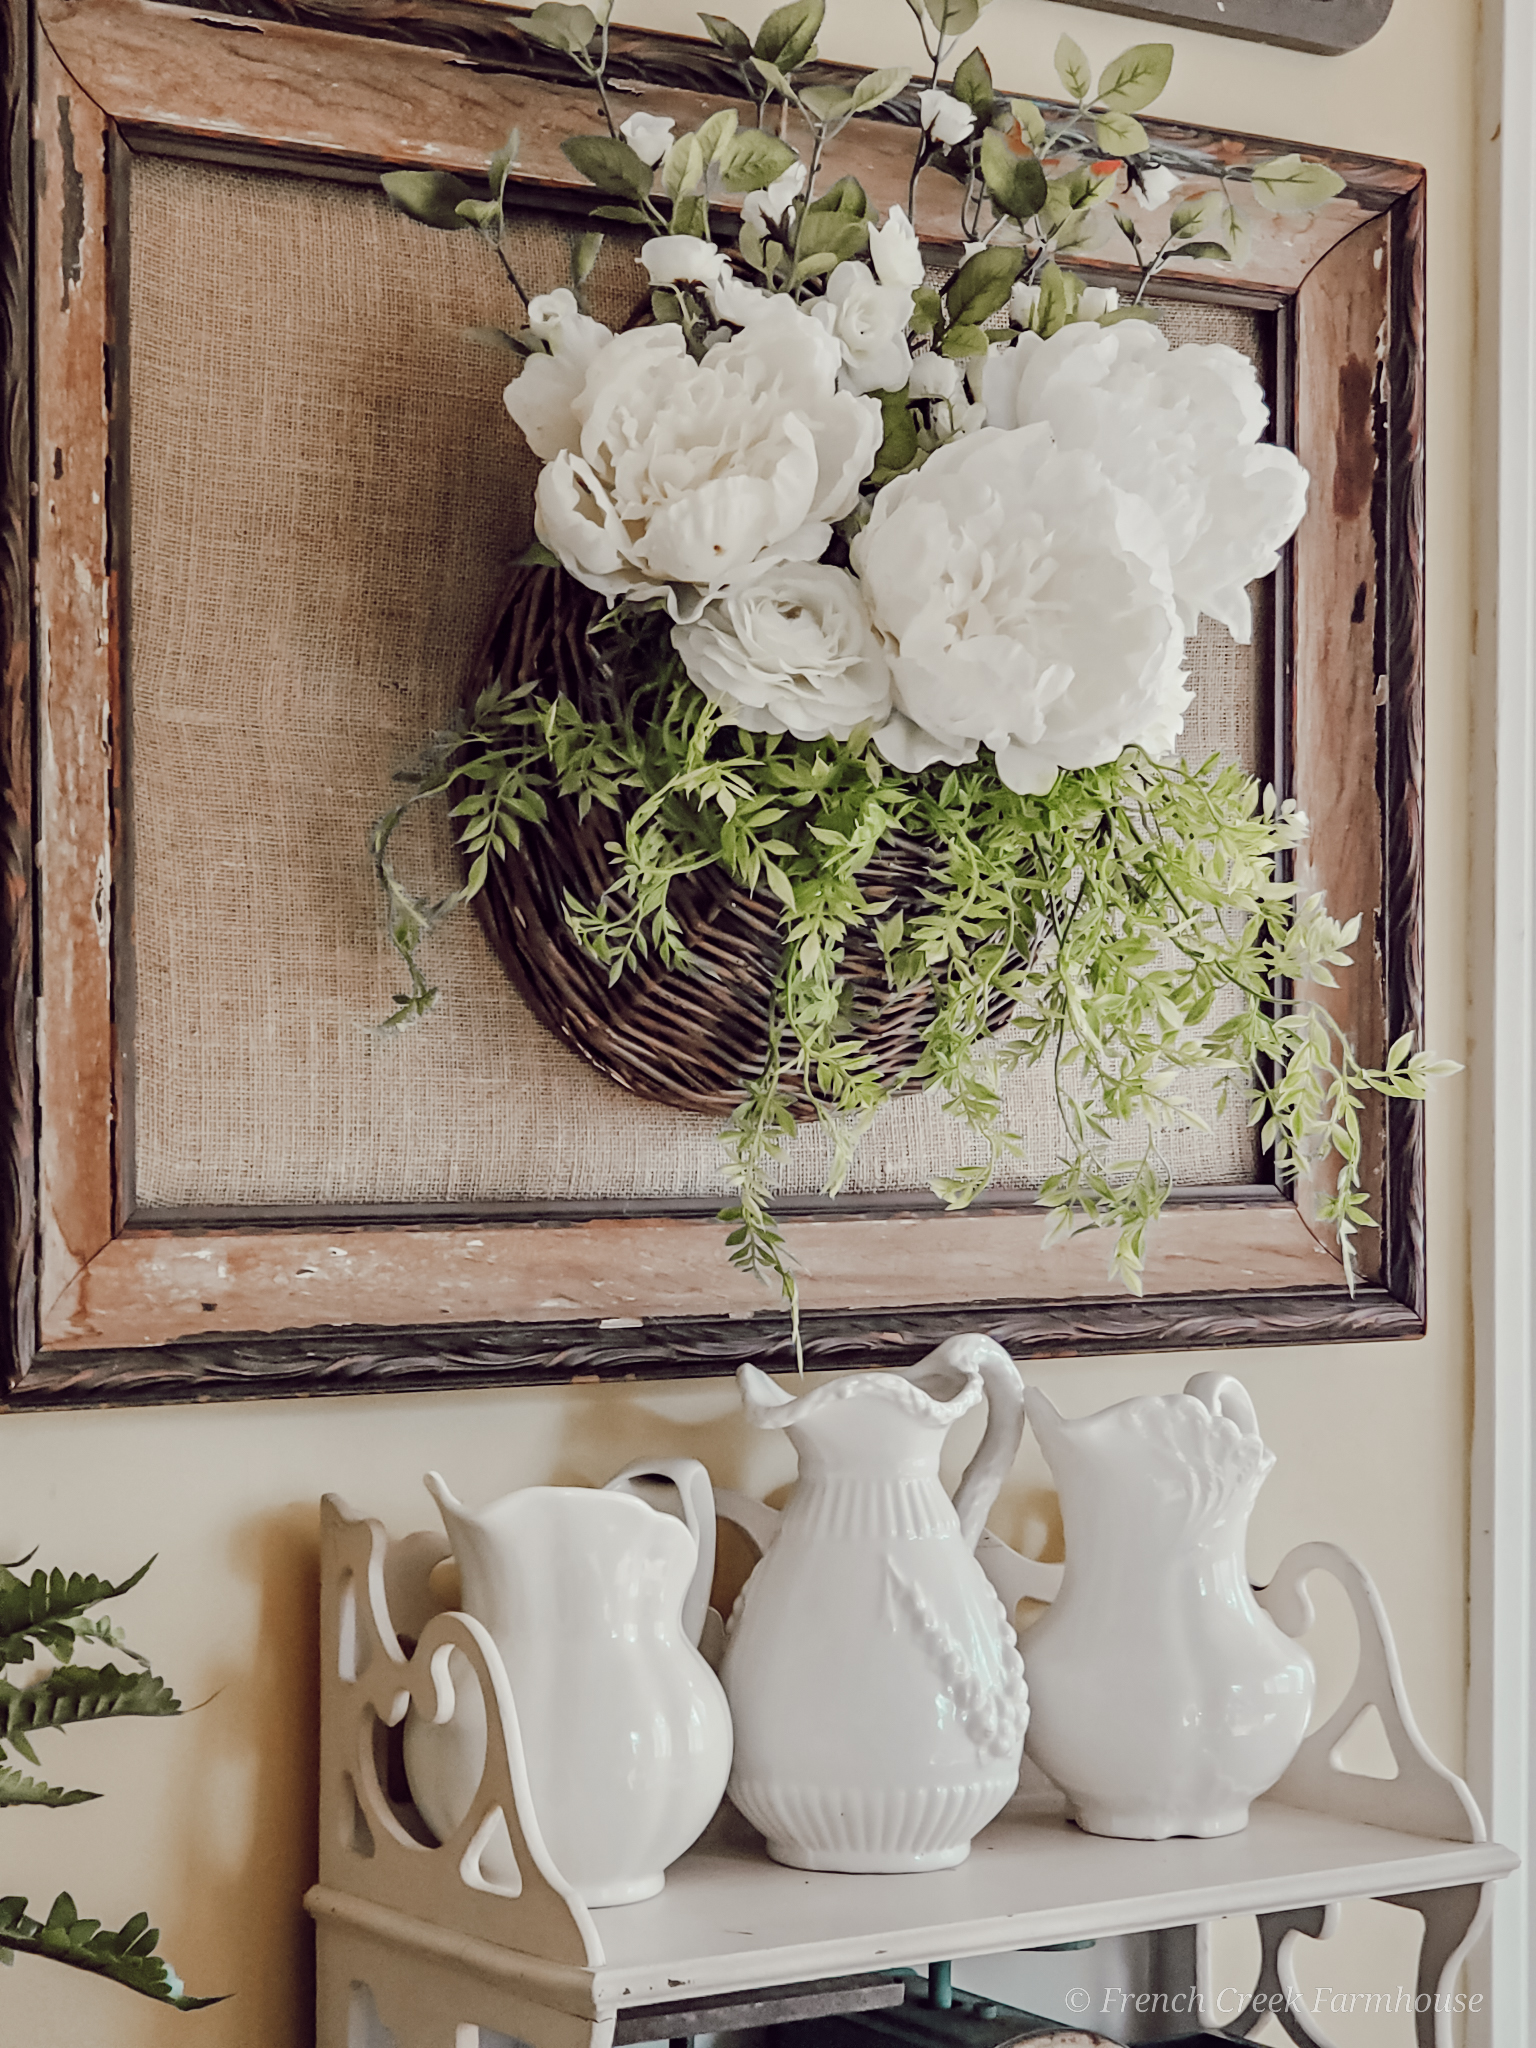 Vintage inspired floral arrangements